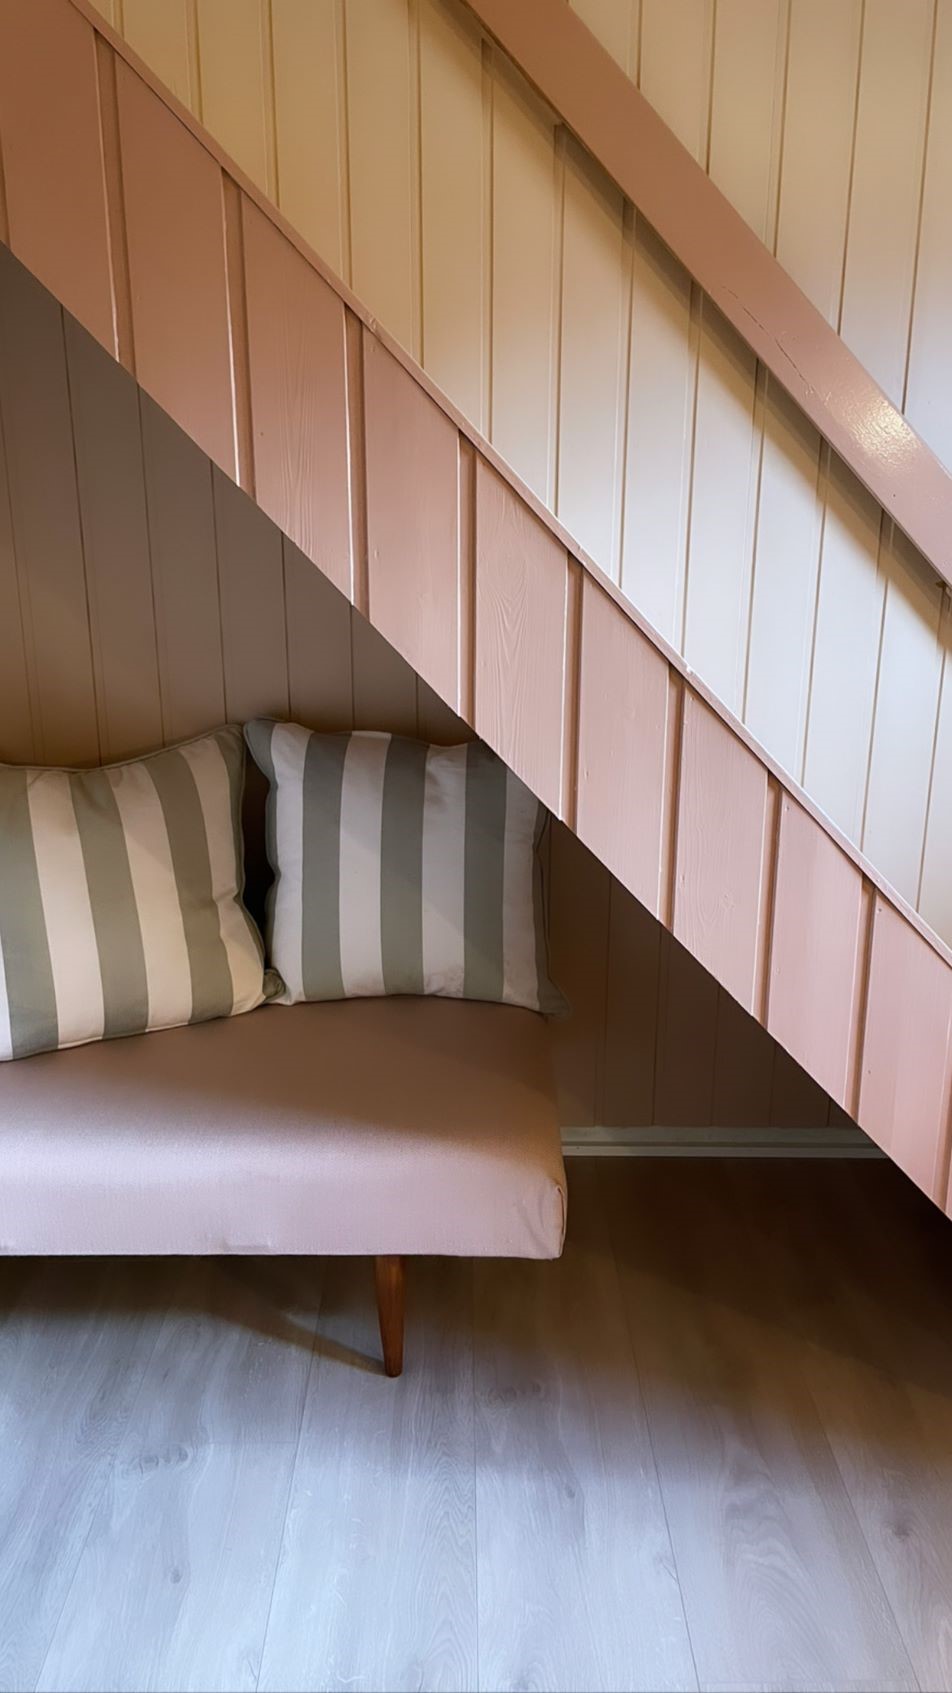 Trapp ned til kjeller med sofa under trapp. Foto.